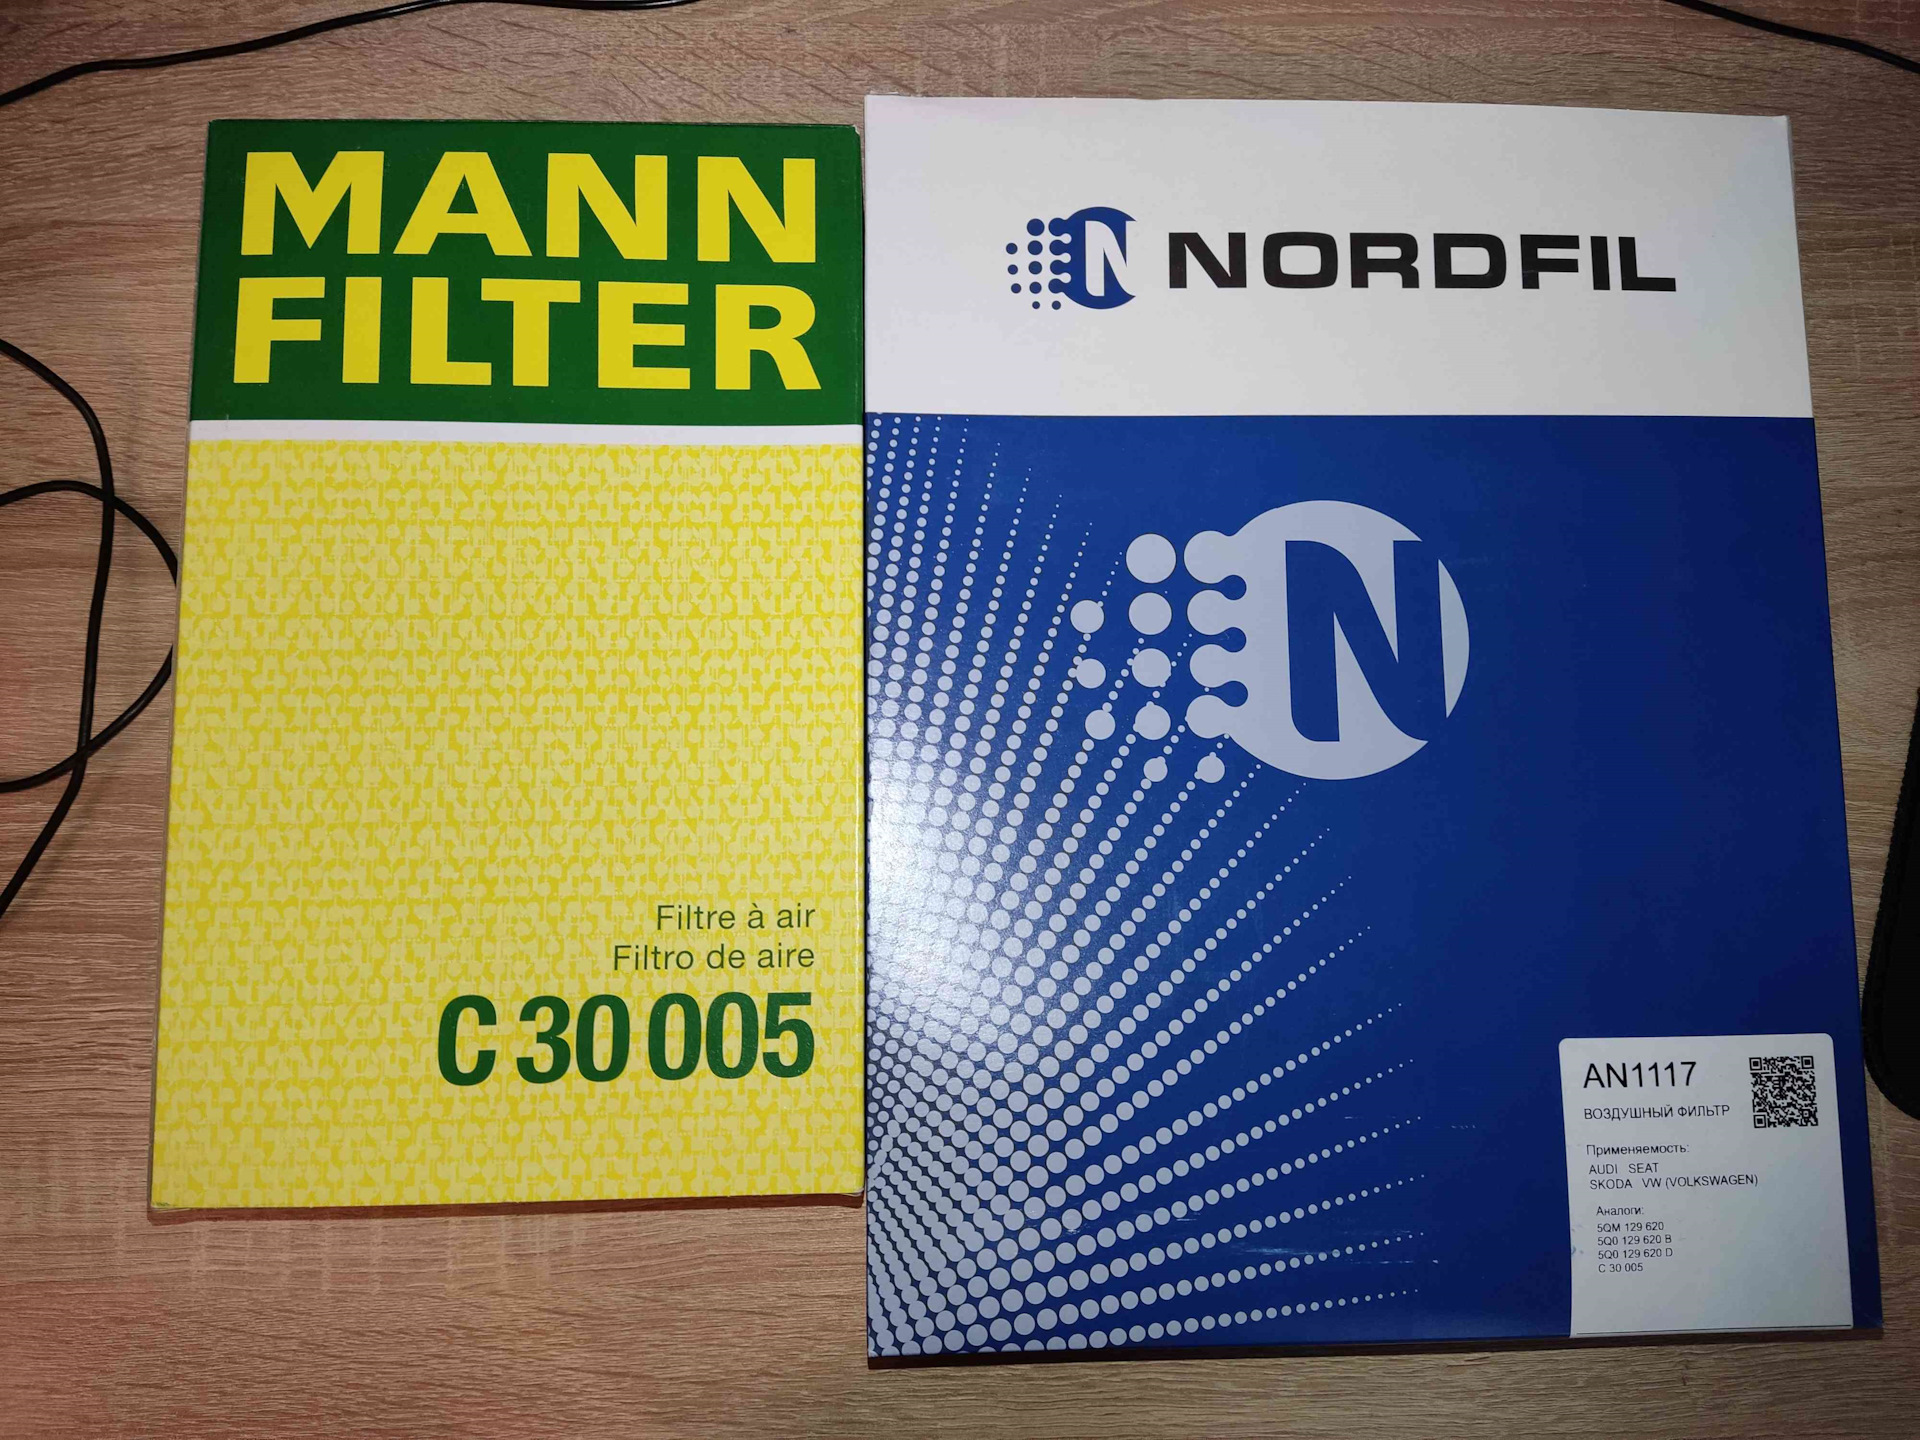 Нордфил фильтр воздушный. Воздушные фильтры NORDFIL. An1117 фильтр. An1117 NORDFIL. Фильтра фирмы нордфил.